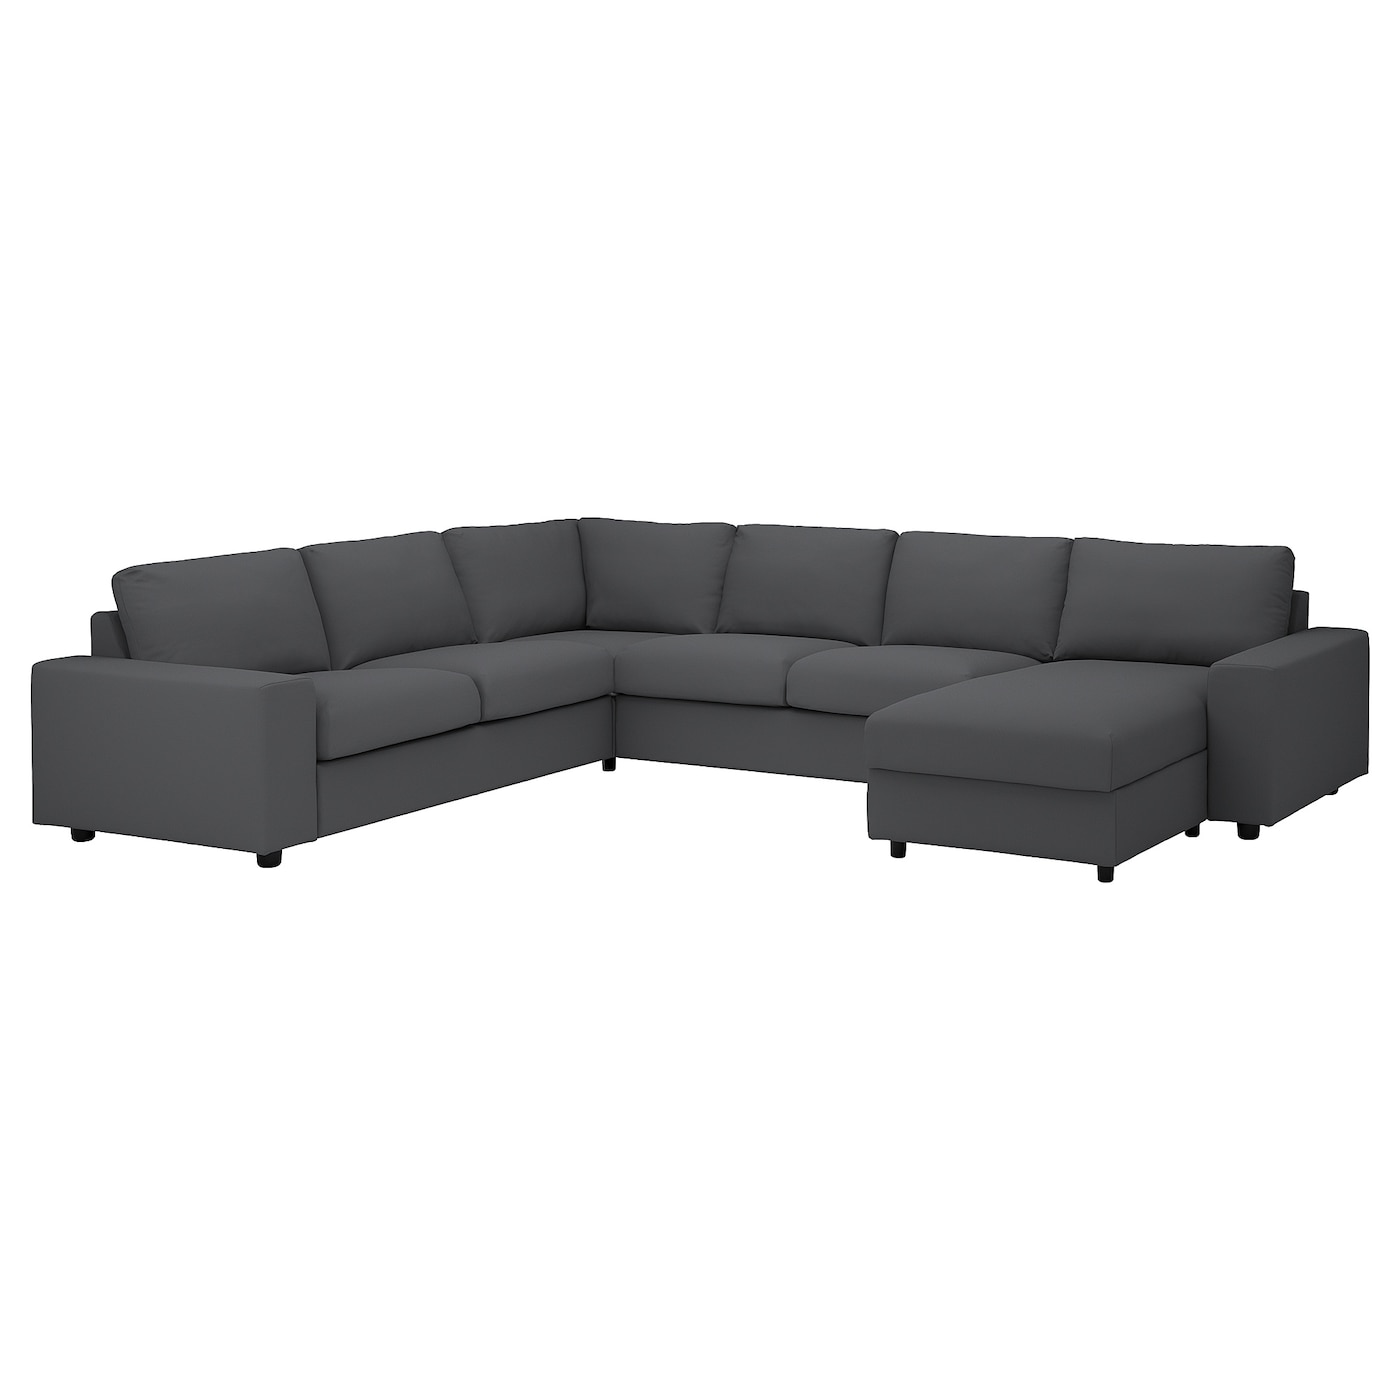 ВИМЛЕ Диван угловой, 5-местный. диван+диван, с широкими подлокотниками/Халларп серый VIMLE IKEA цена и фото